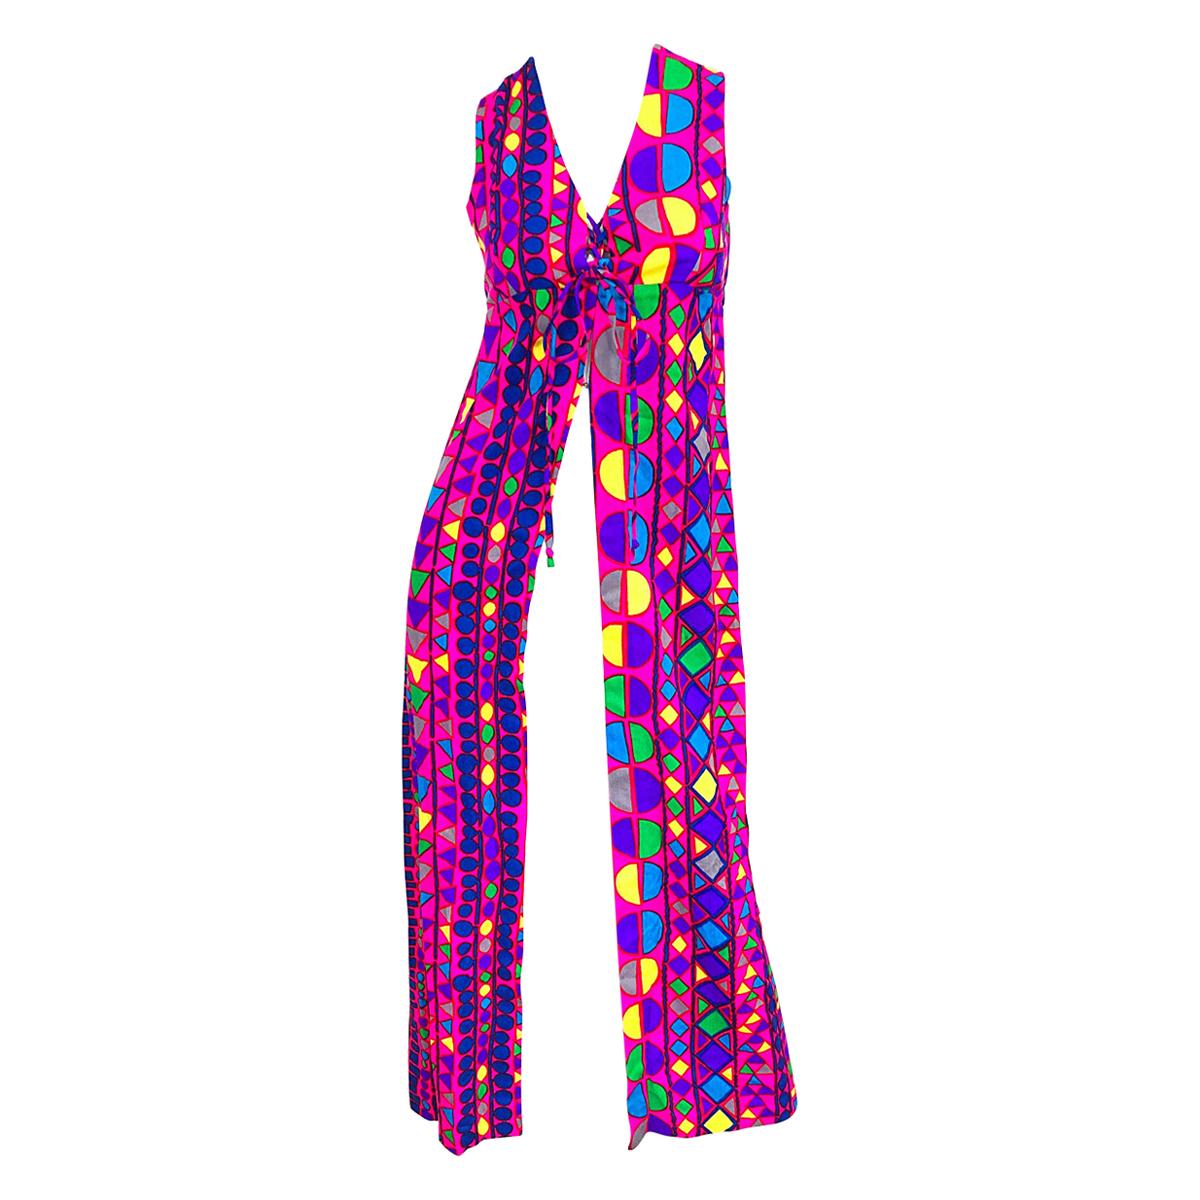 Joseph Magnin - Magnin - Magnifique robe longue à gilet en mosaïque abstraite colorée et vibrante, années 1970 en vente